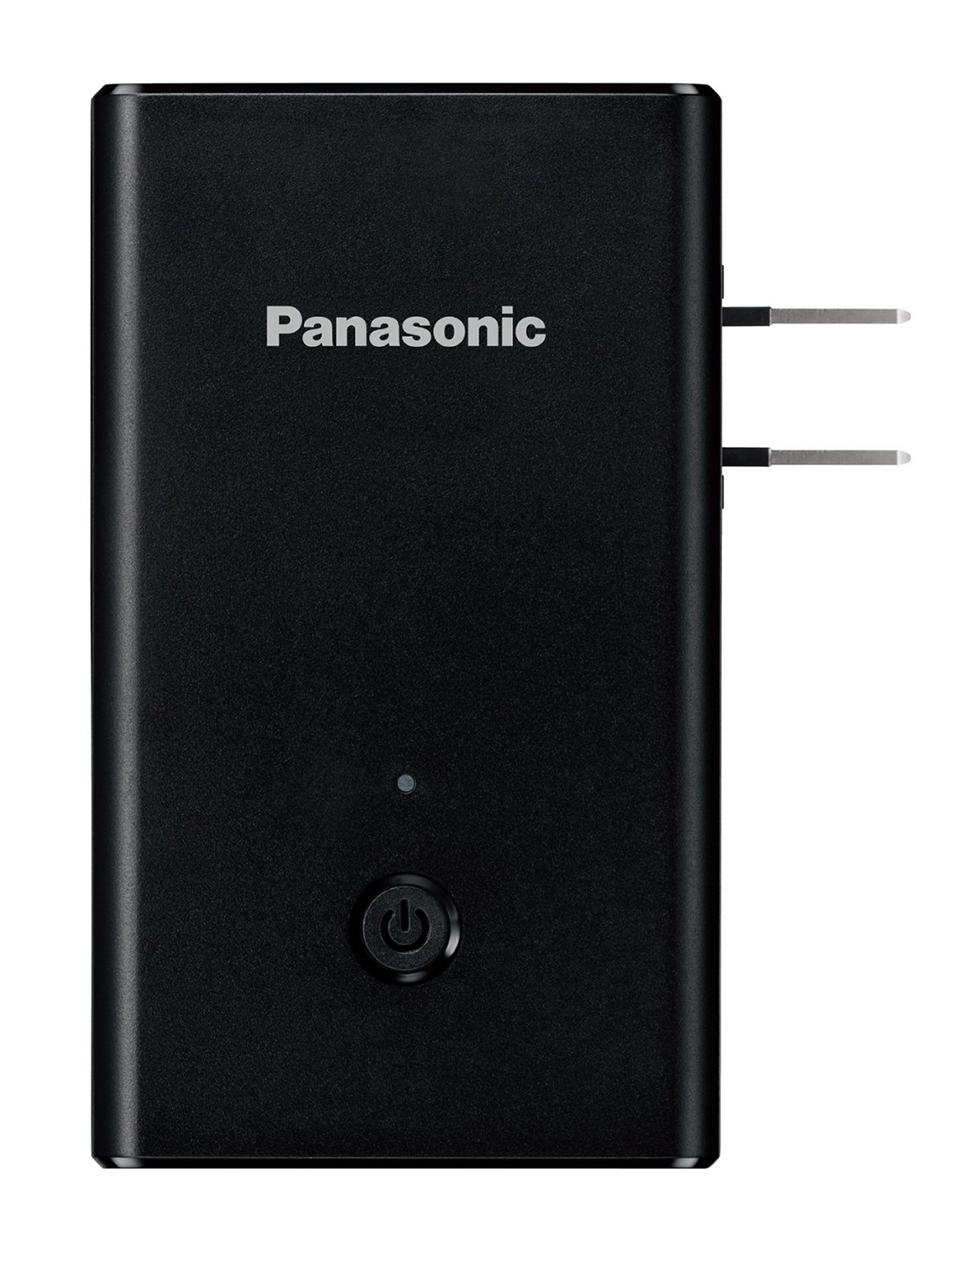 Panasonic Mobile Travel Charger